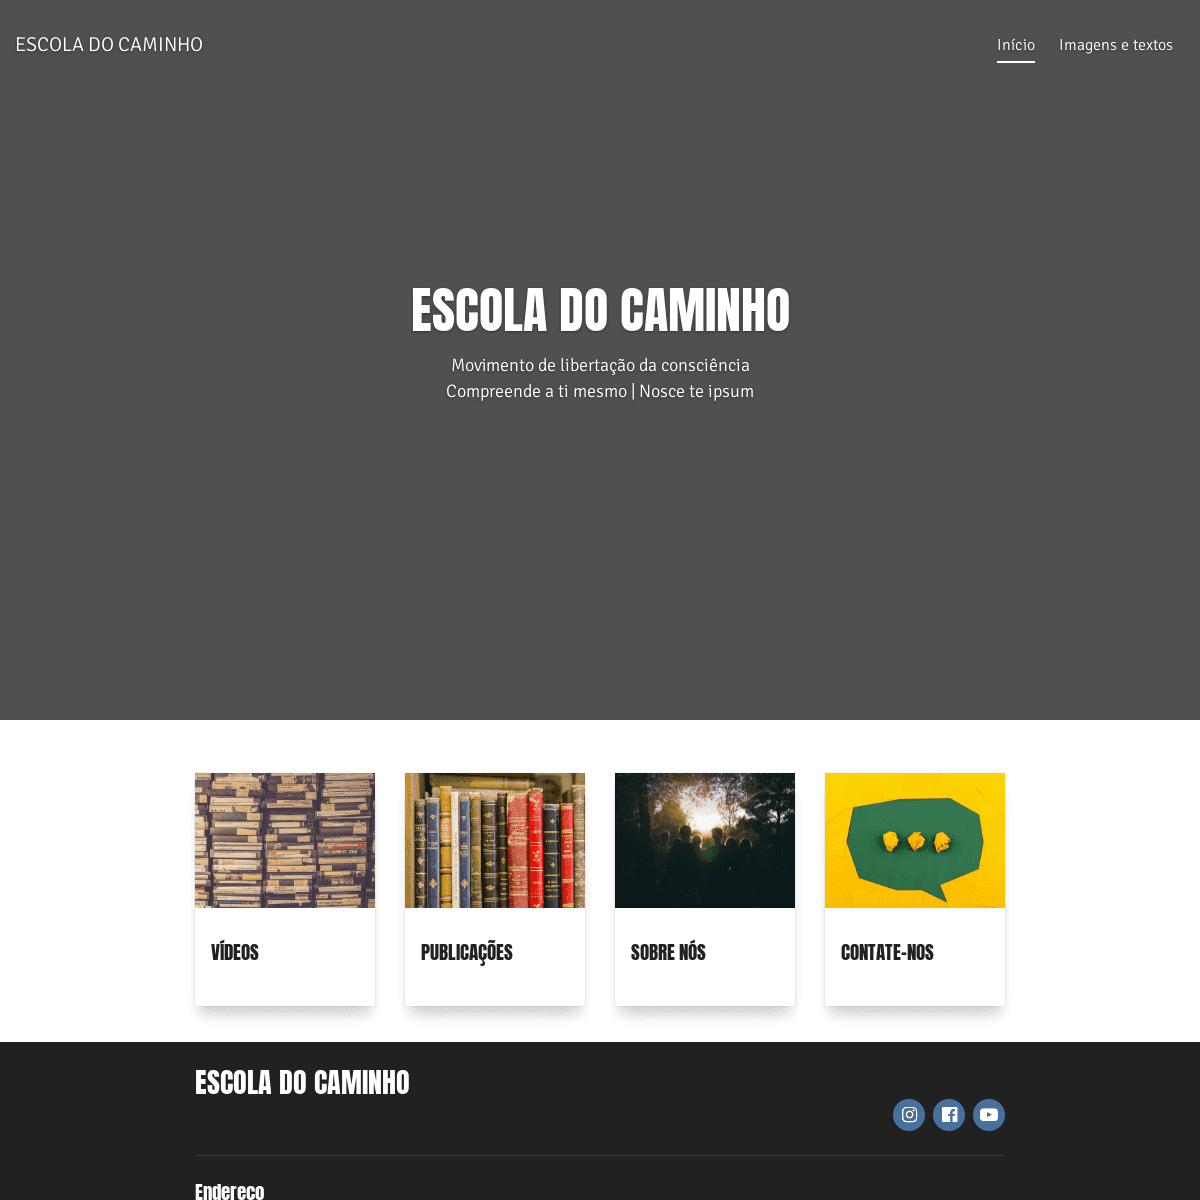 A complete backup of https://escoladocaminho.com